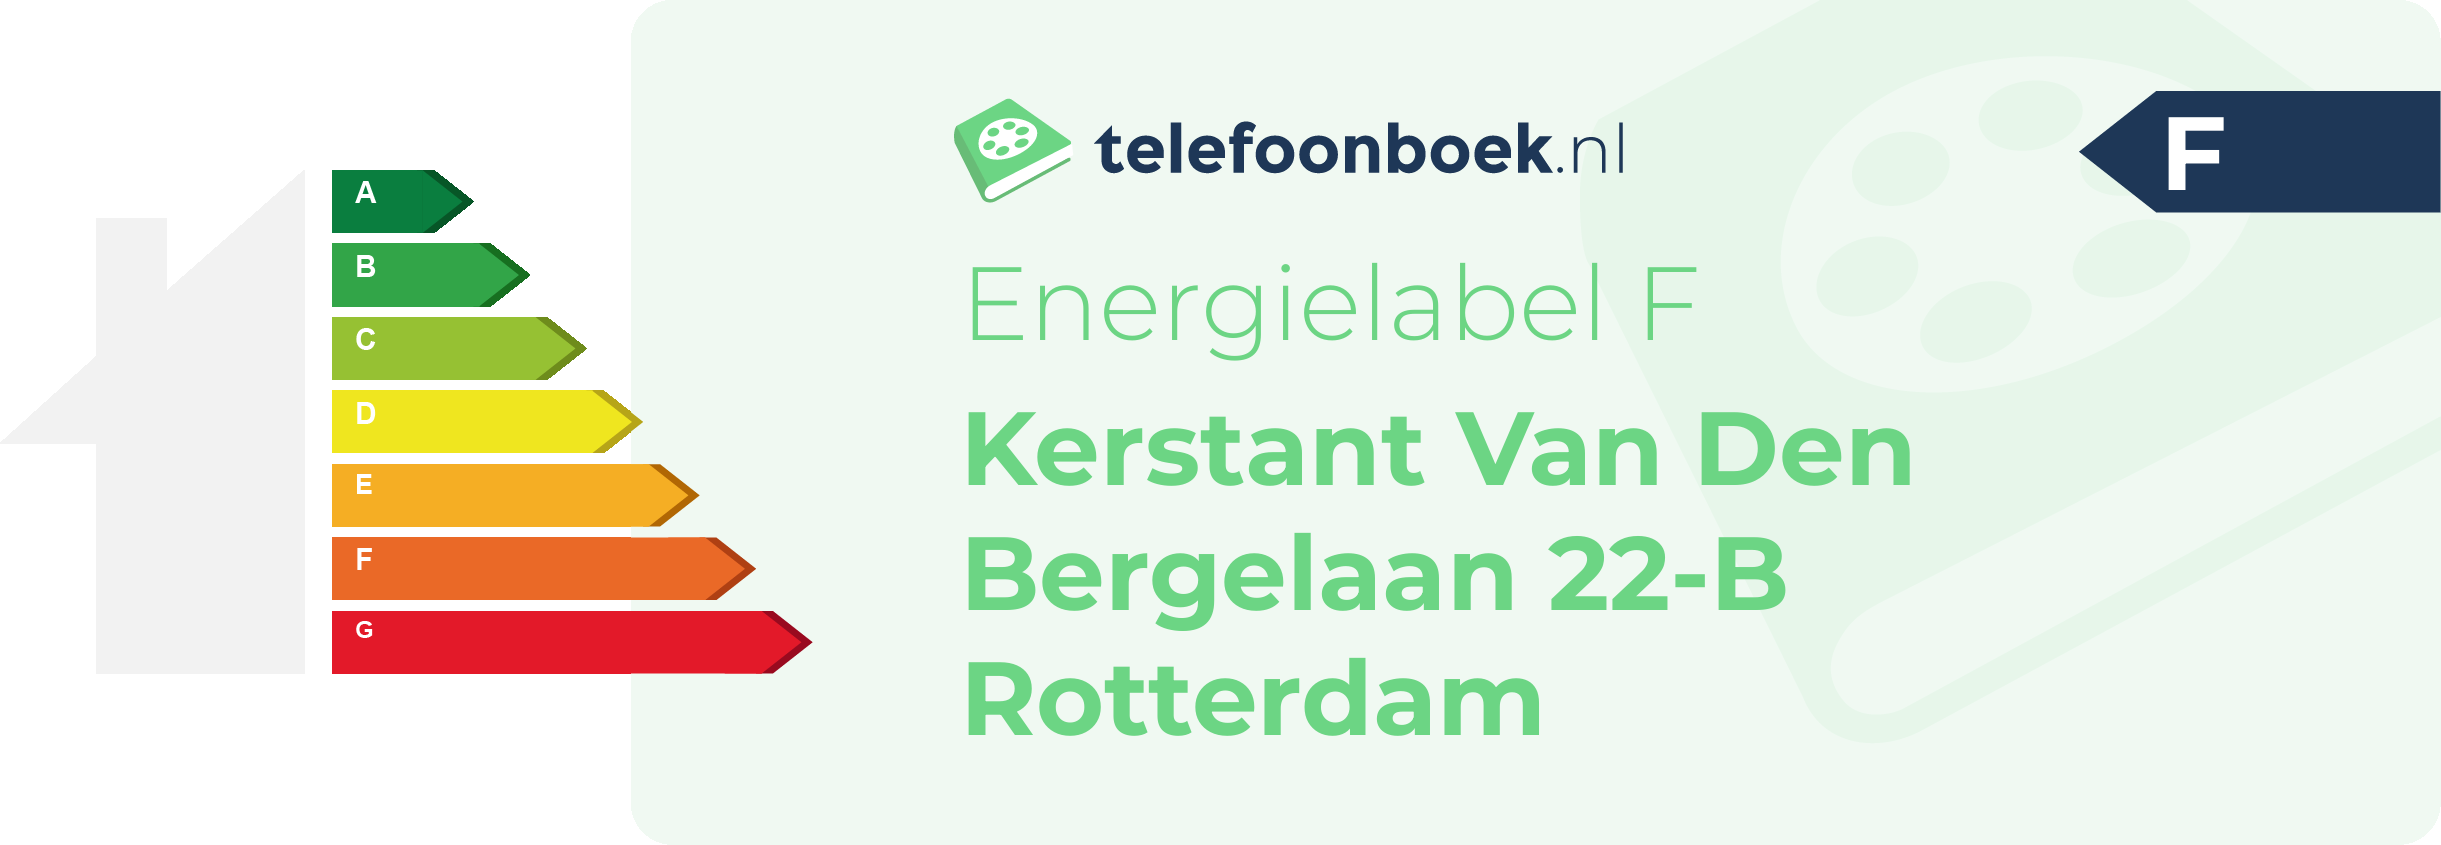 Energielabel Kerstant Van Den Bergelaan 22-B Rotterdam